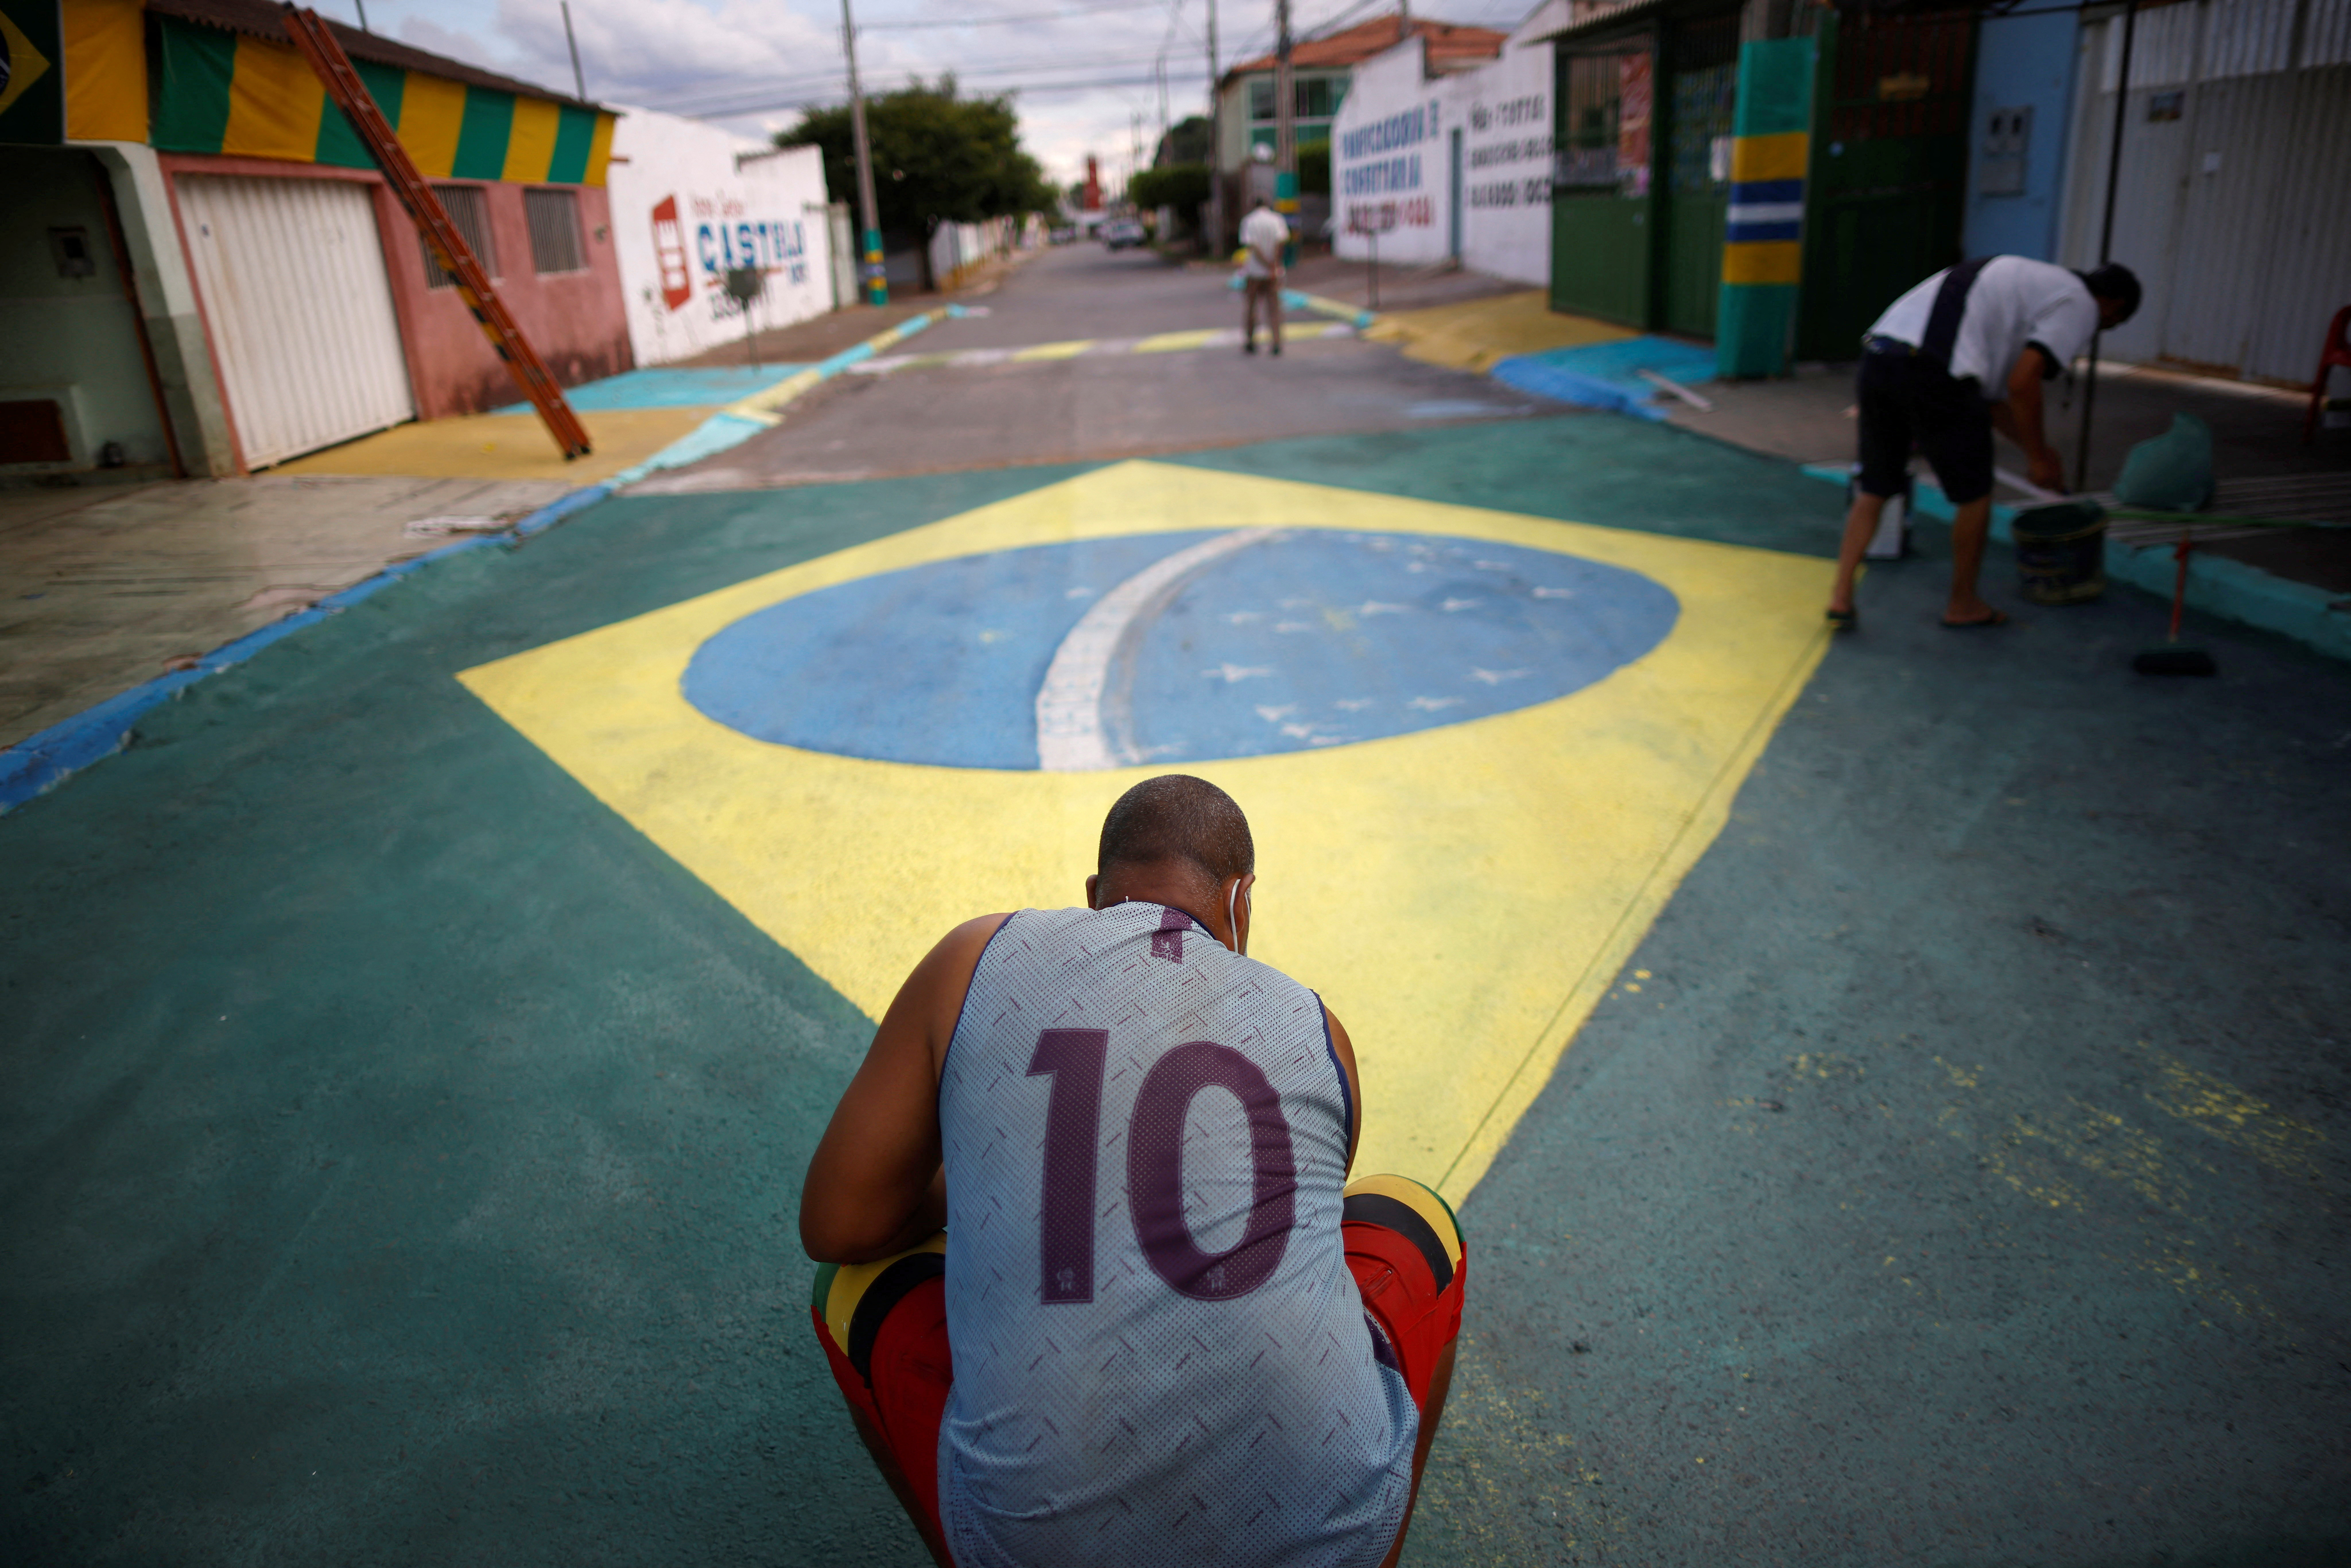 La gente decora la calle antes de la próxima Copa Mundial de la FIFA Qatar 2022 en el barrio de Ceilandia de Brasilia. (REUTERS/Adriano Machado)